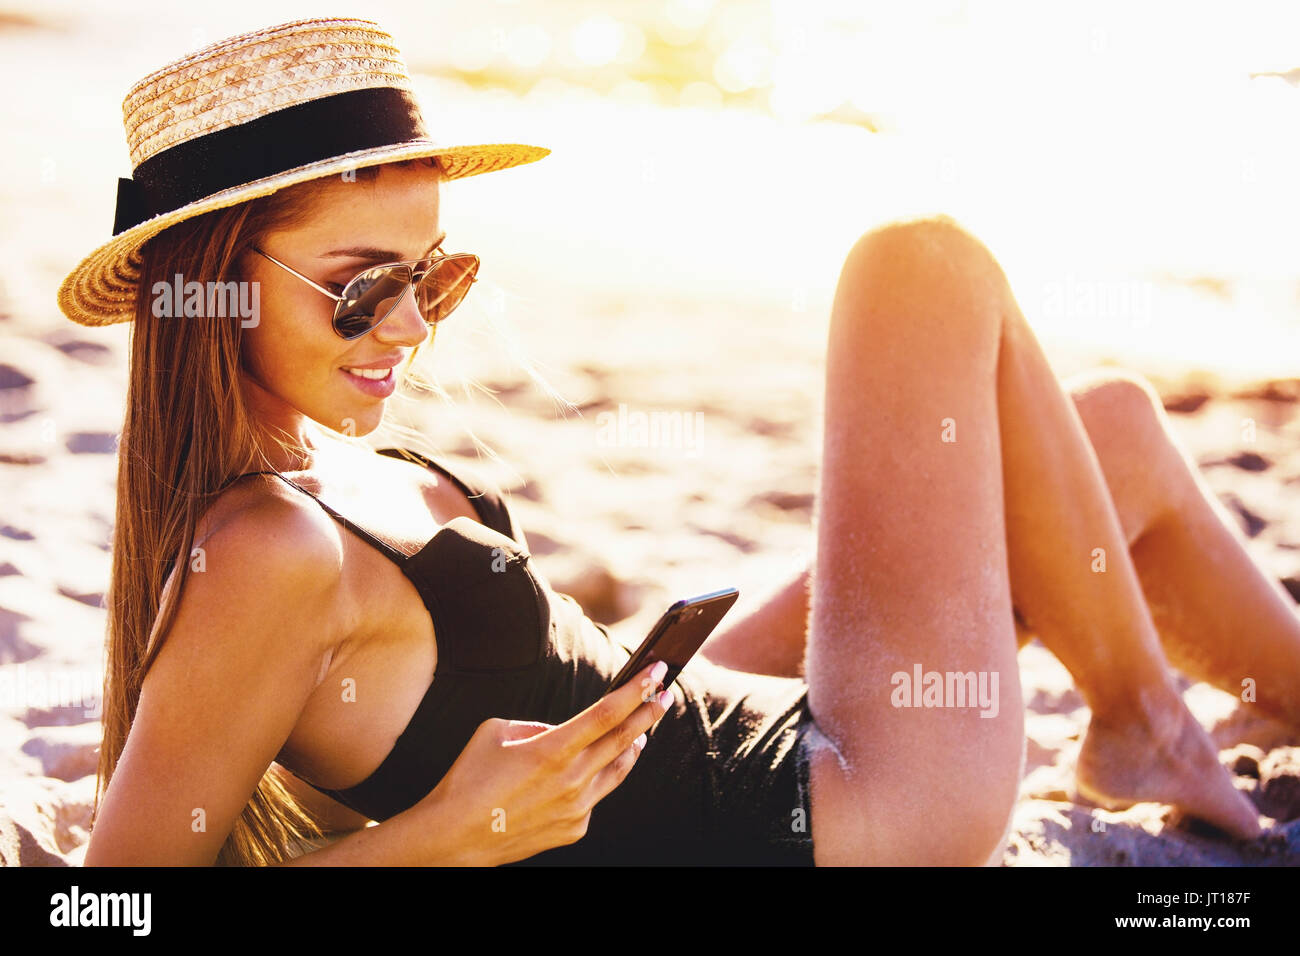 Hermosa chica envía un mensaje con su smartphone en la playa. Foto de stock